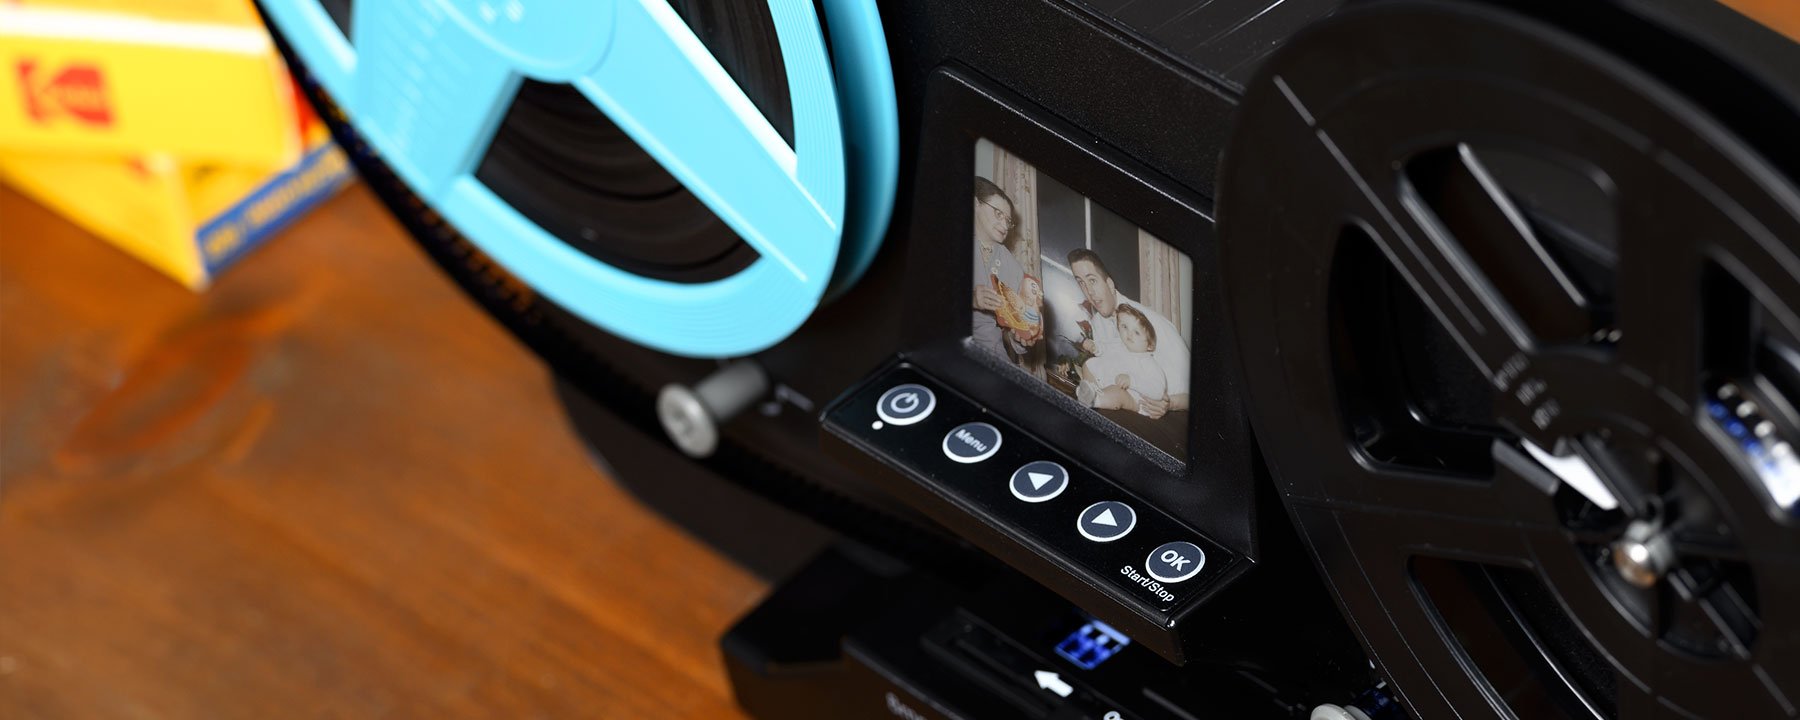 Scanner de film Magnasonic Super 8/8 mm, convertit le film en vidéo  numérique, écran vibrant de 2,3, numérise et visualise les bobines de film  Super 8/8 mm de 3, 5 et 7 (